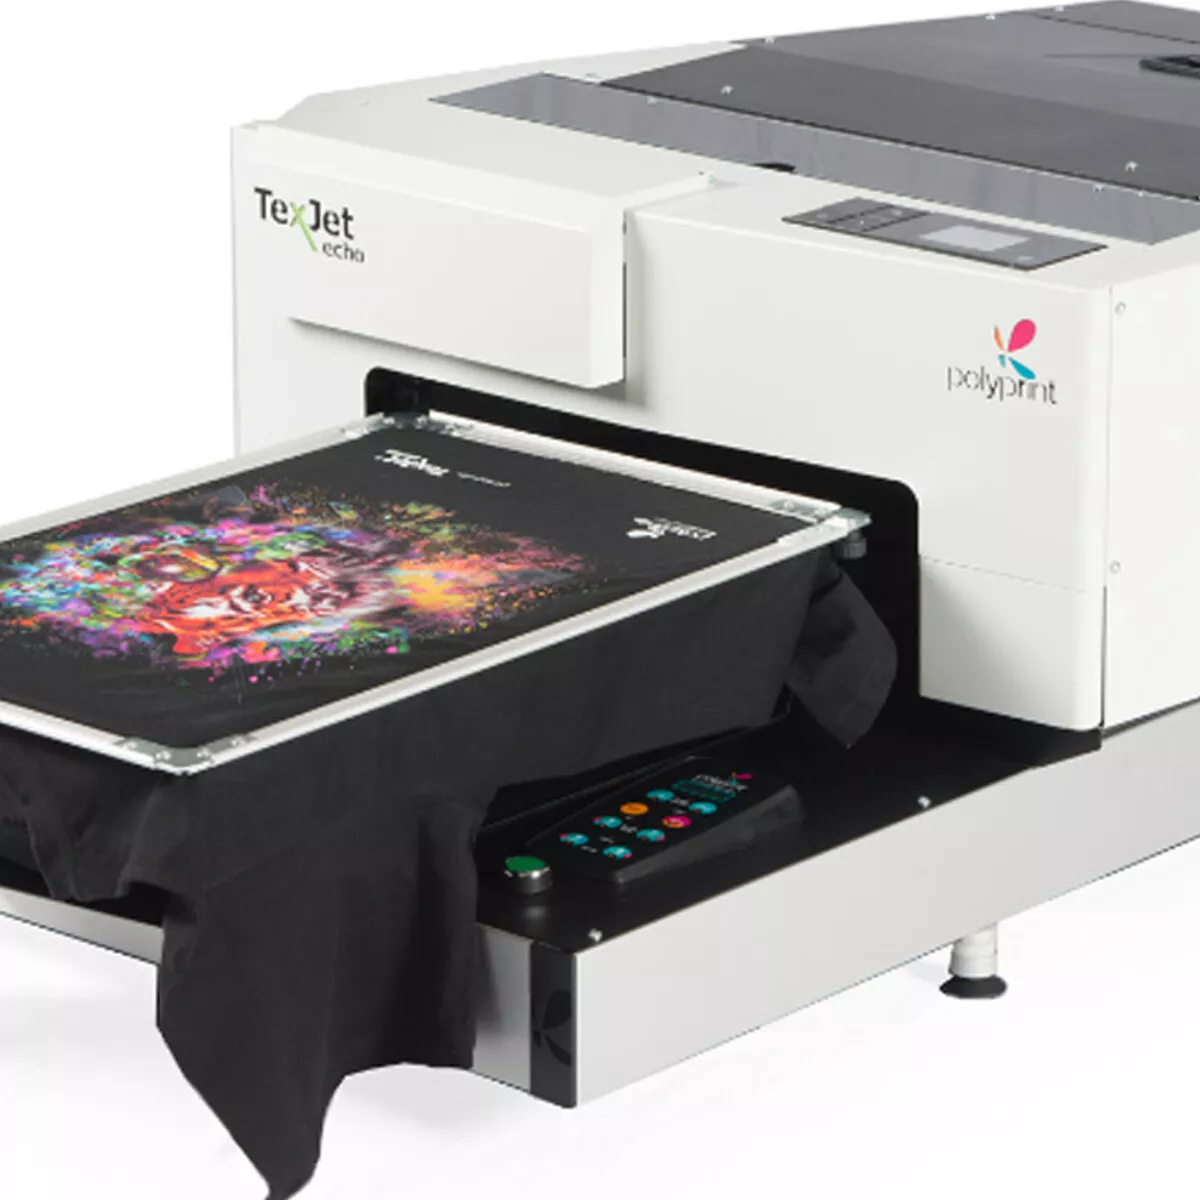 Texjet Echo Digital T-Shirt Printer Full Color+ White Direct to Garment CMYK | eBay